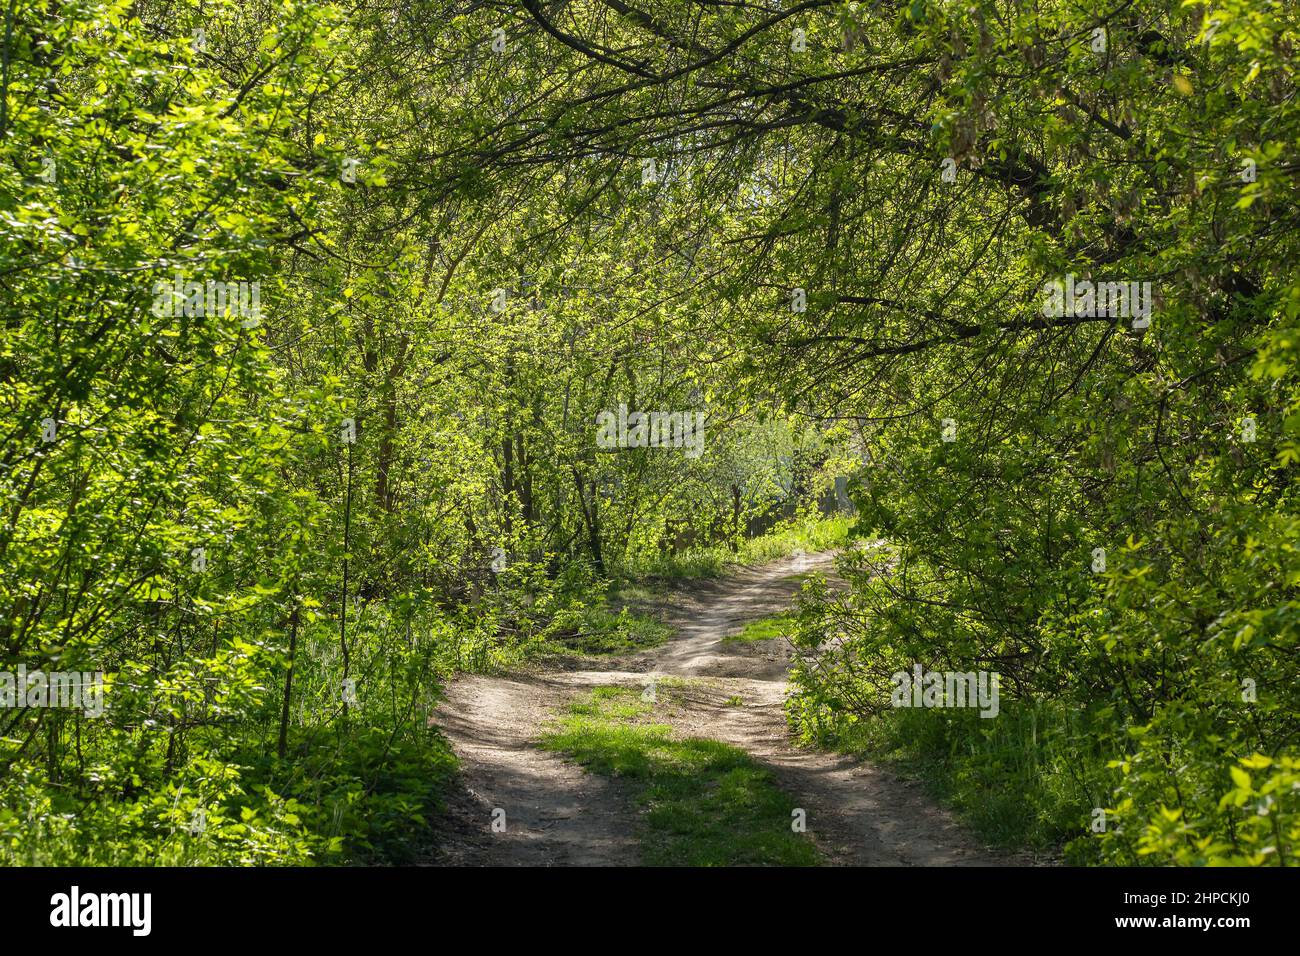 Route de terre dans un tunnel vert dans la forêt de printemps avec de petites feuilles fraîches Banque D'Images